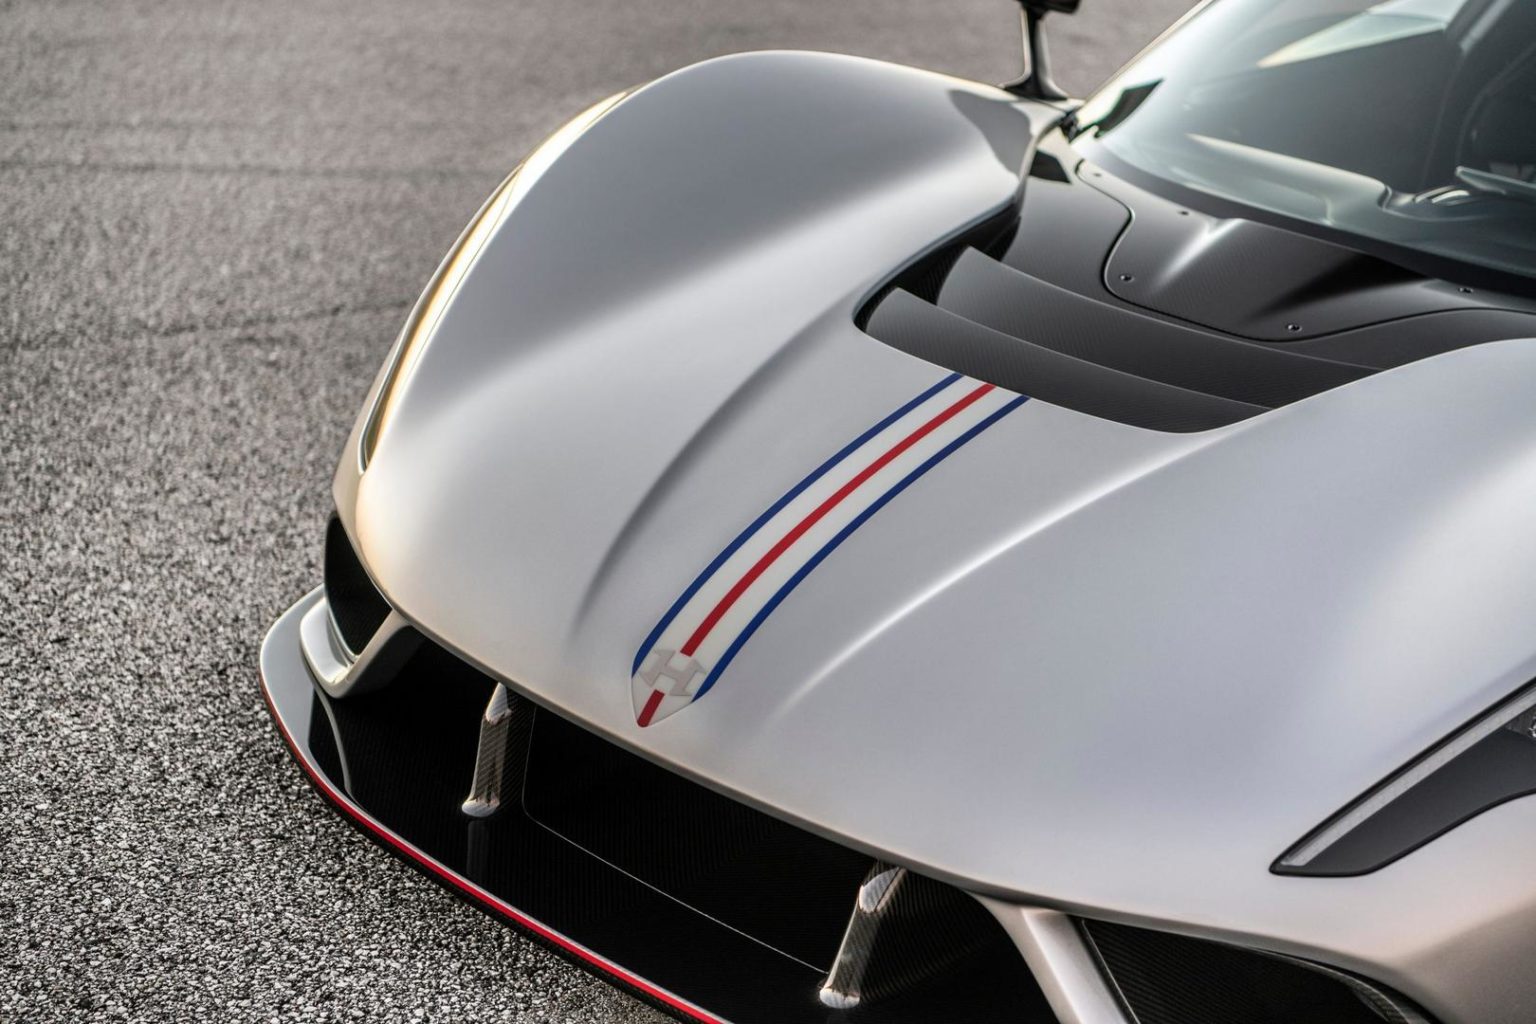 Новый Venom F5 стремится превысить максимальную скорость 500 км/ч на серийном автомобиле. Попытка рекорда и окончательные значения скорости будут проверены экспертами Racelogic с помощью системы GPS VBOX. В тесте скорости примут участие гости из СМИ,